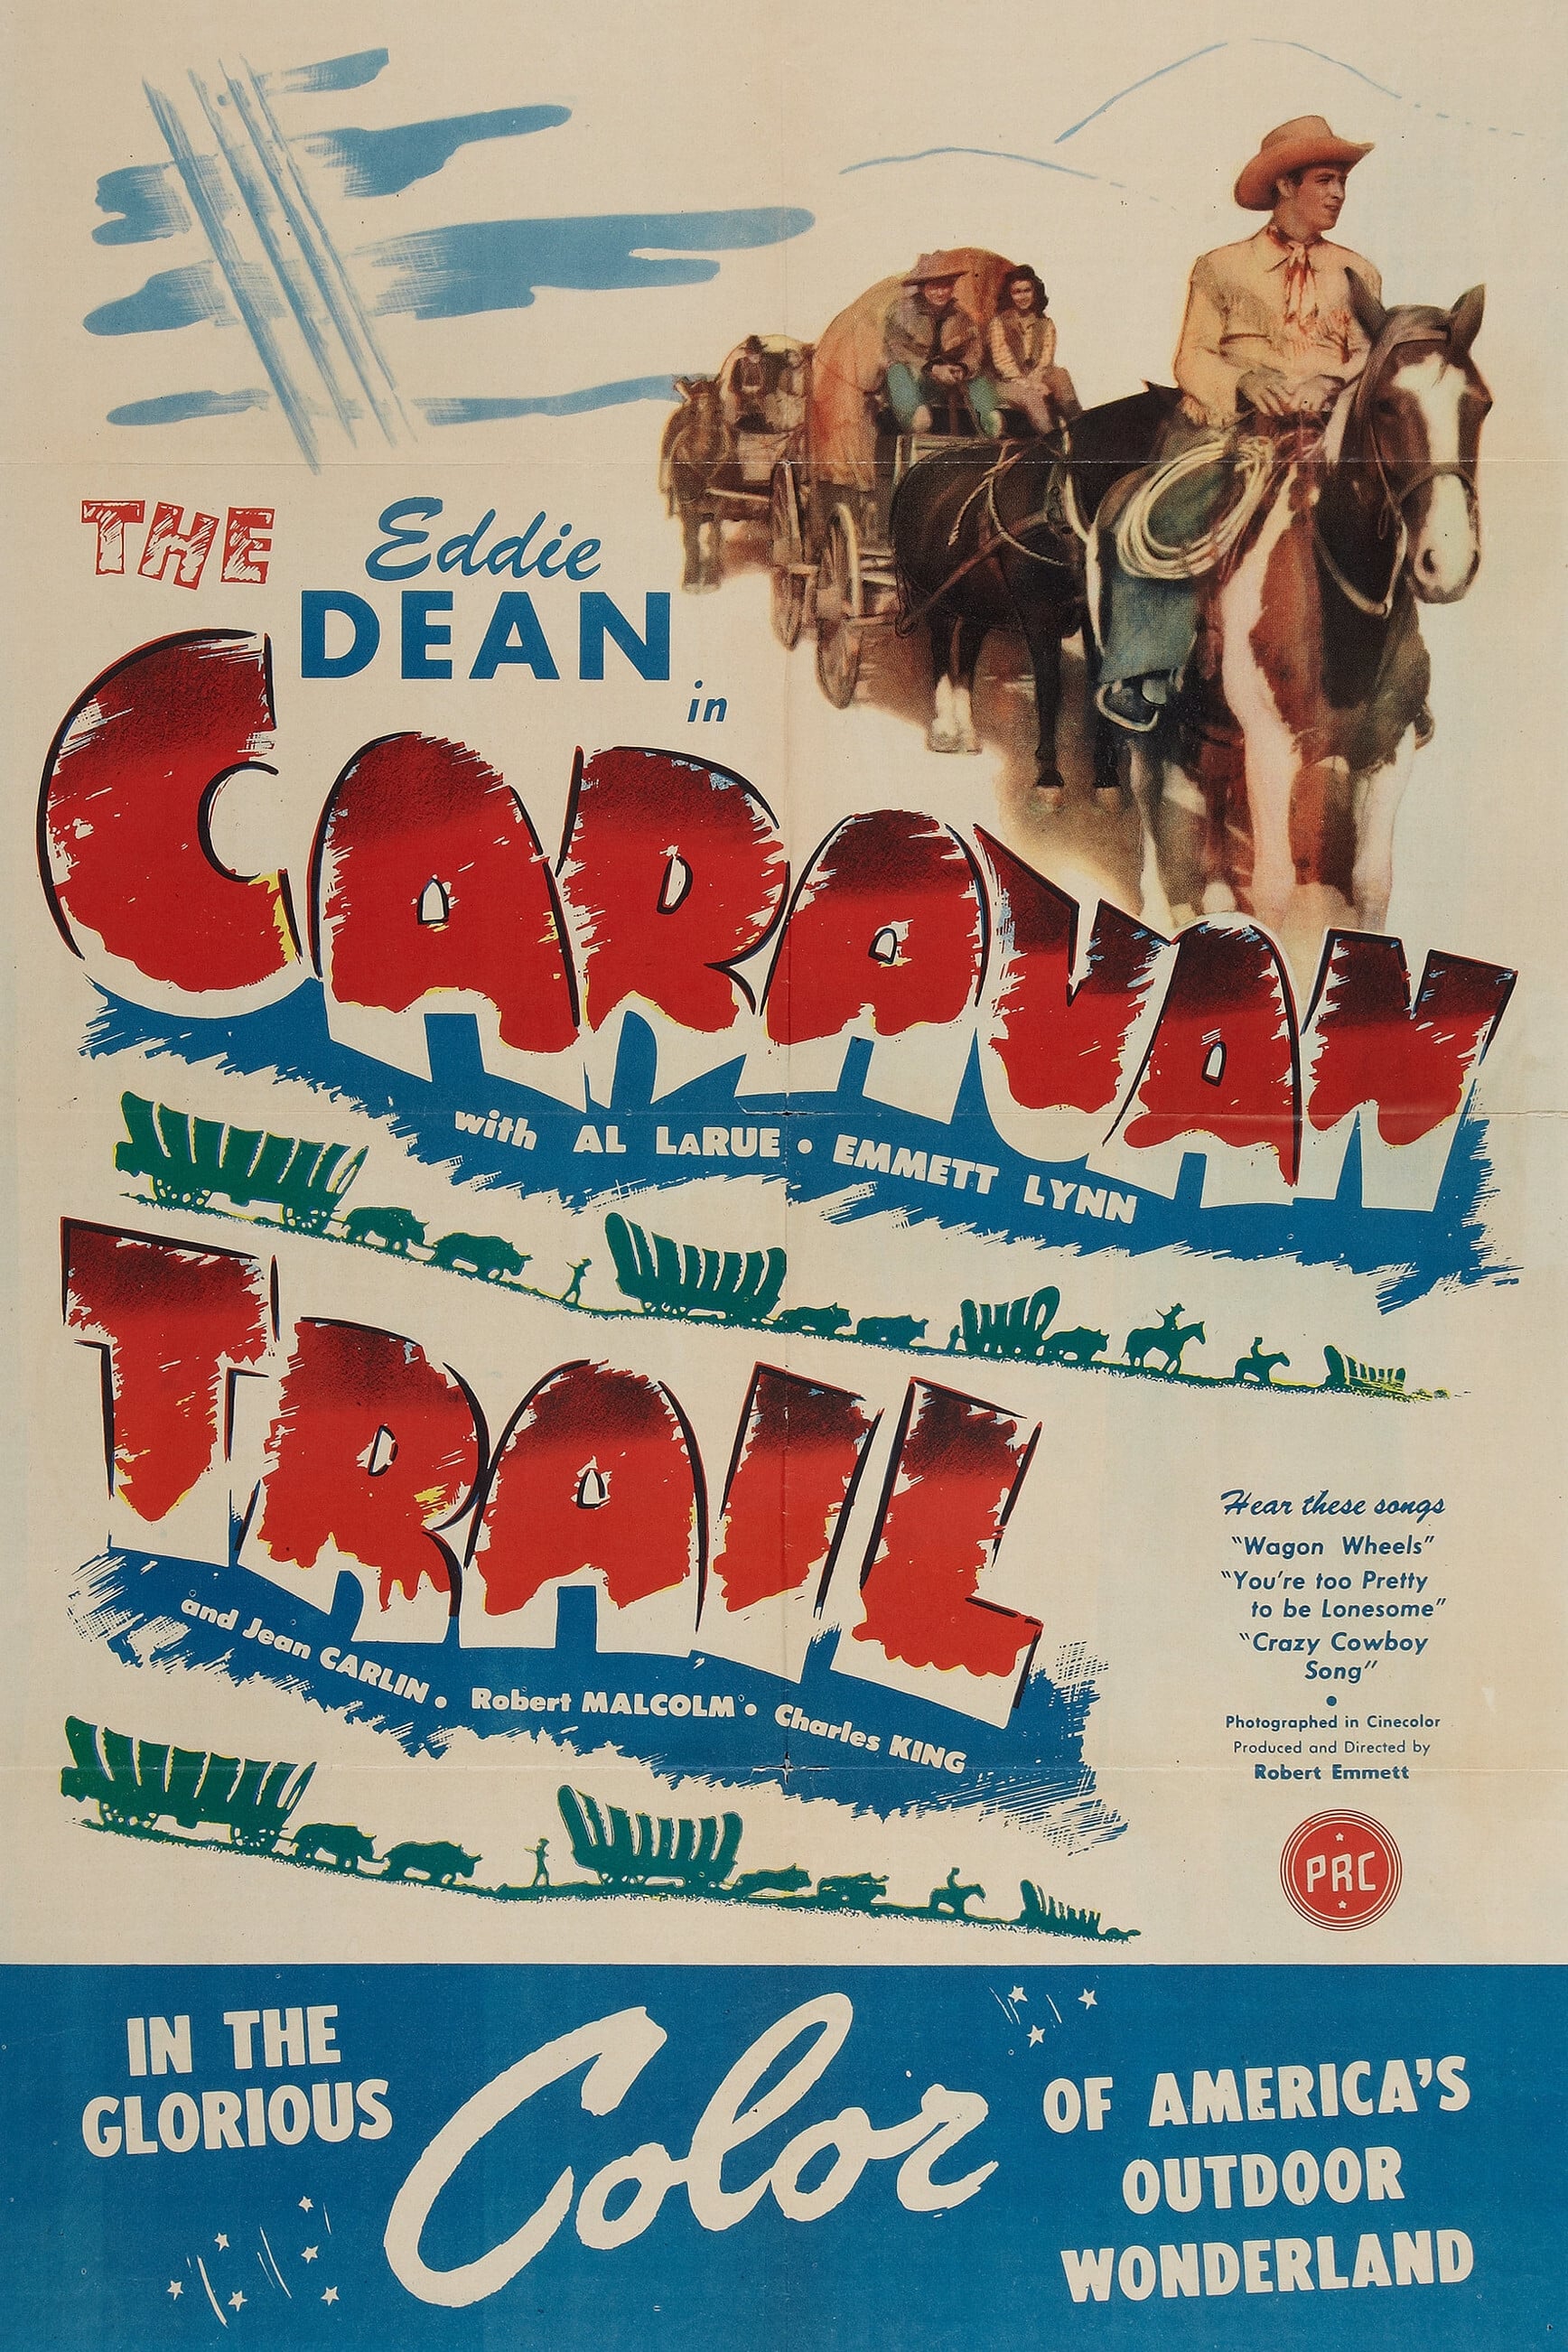 The Caravan Trail